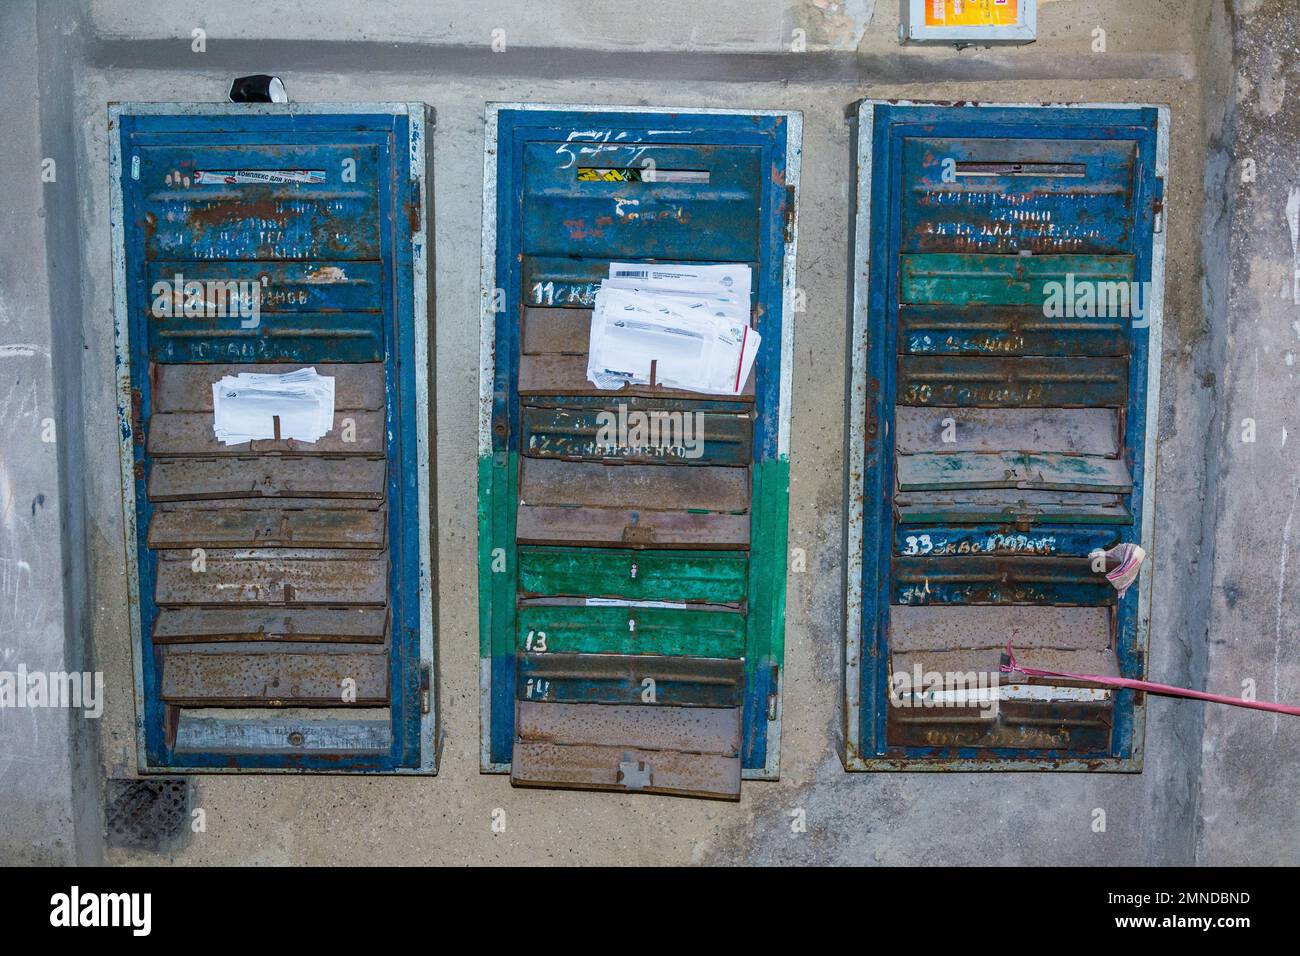 ODESSA, UCRAINA - Apr 29, 2019: Gruppo di caselle postali con pacchetti di entrate in una casa municipale abbandonata, Odessa, Ucraina Foto Stock